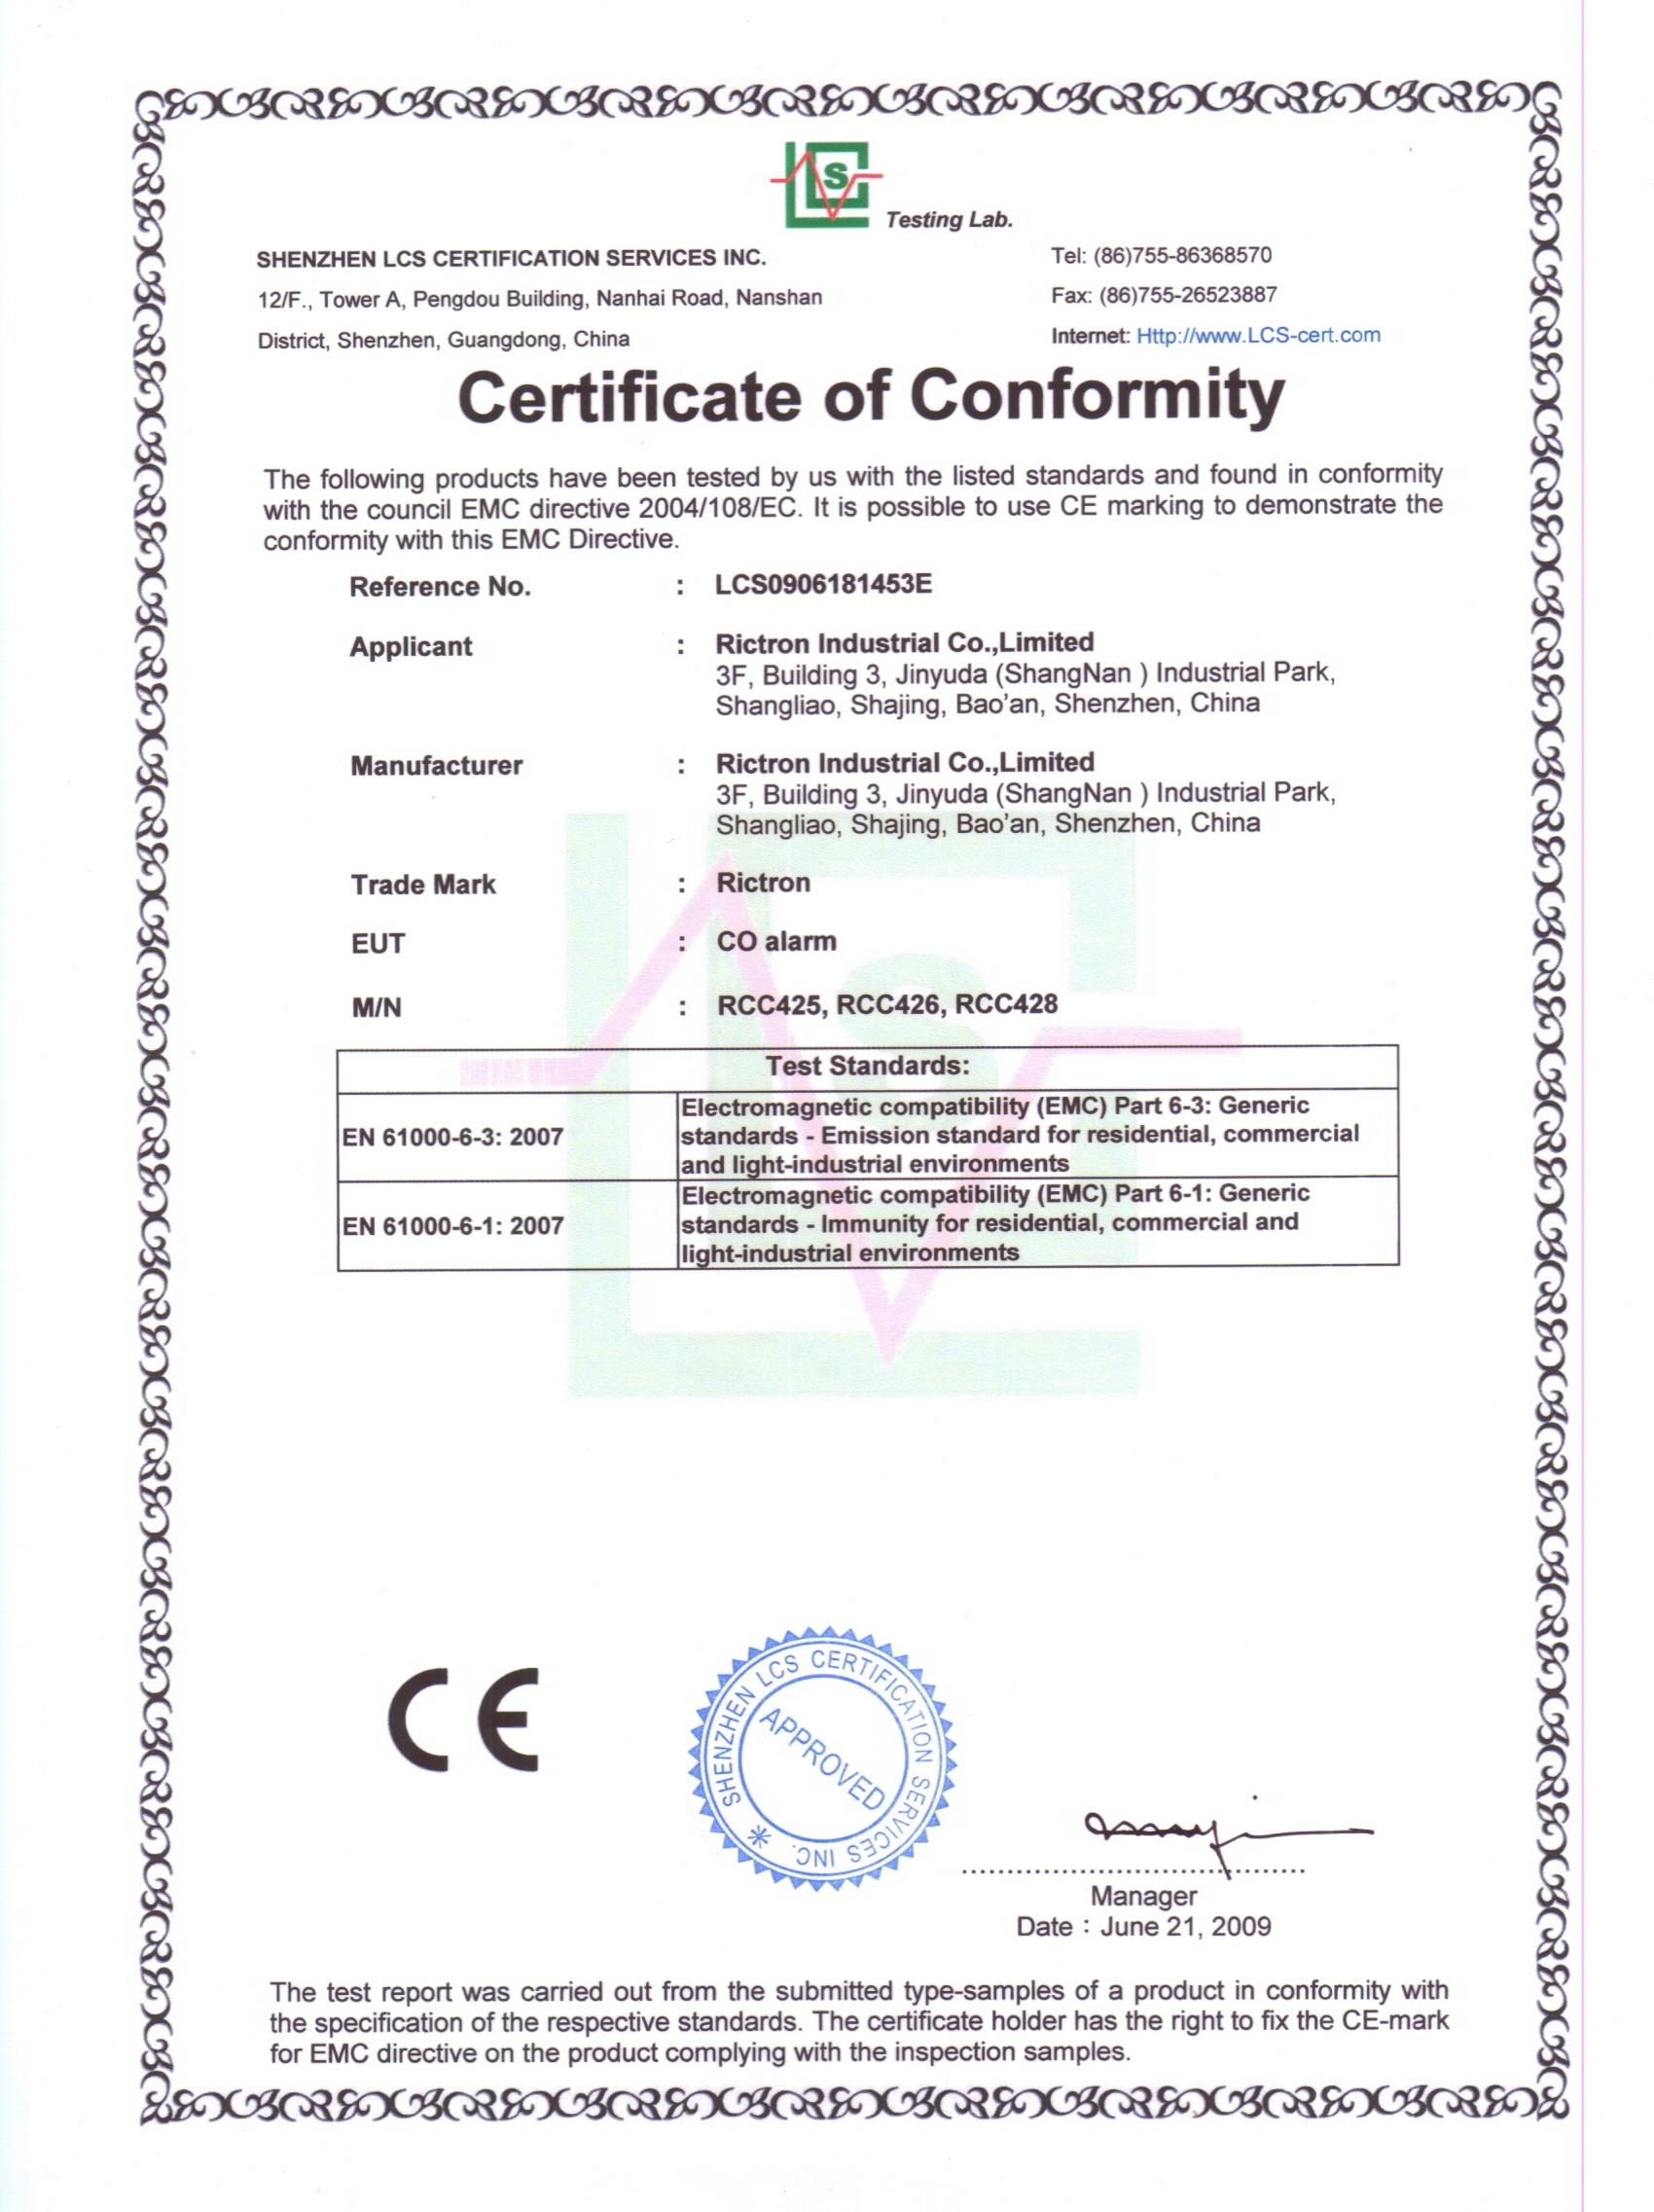 CE for RCC426 (EMC)